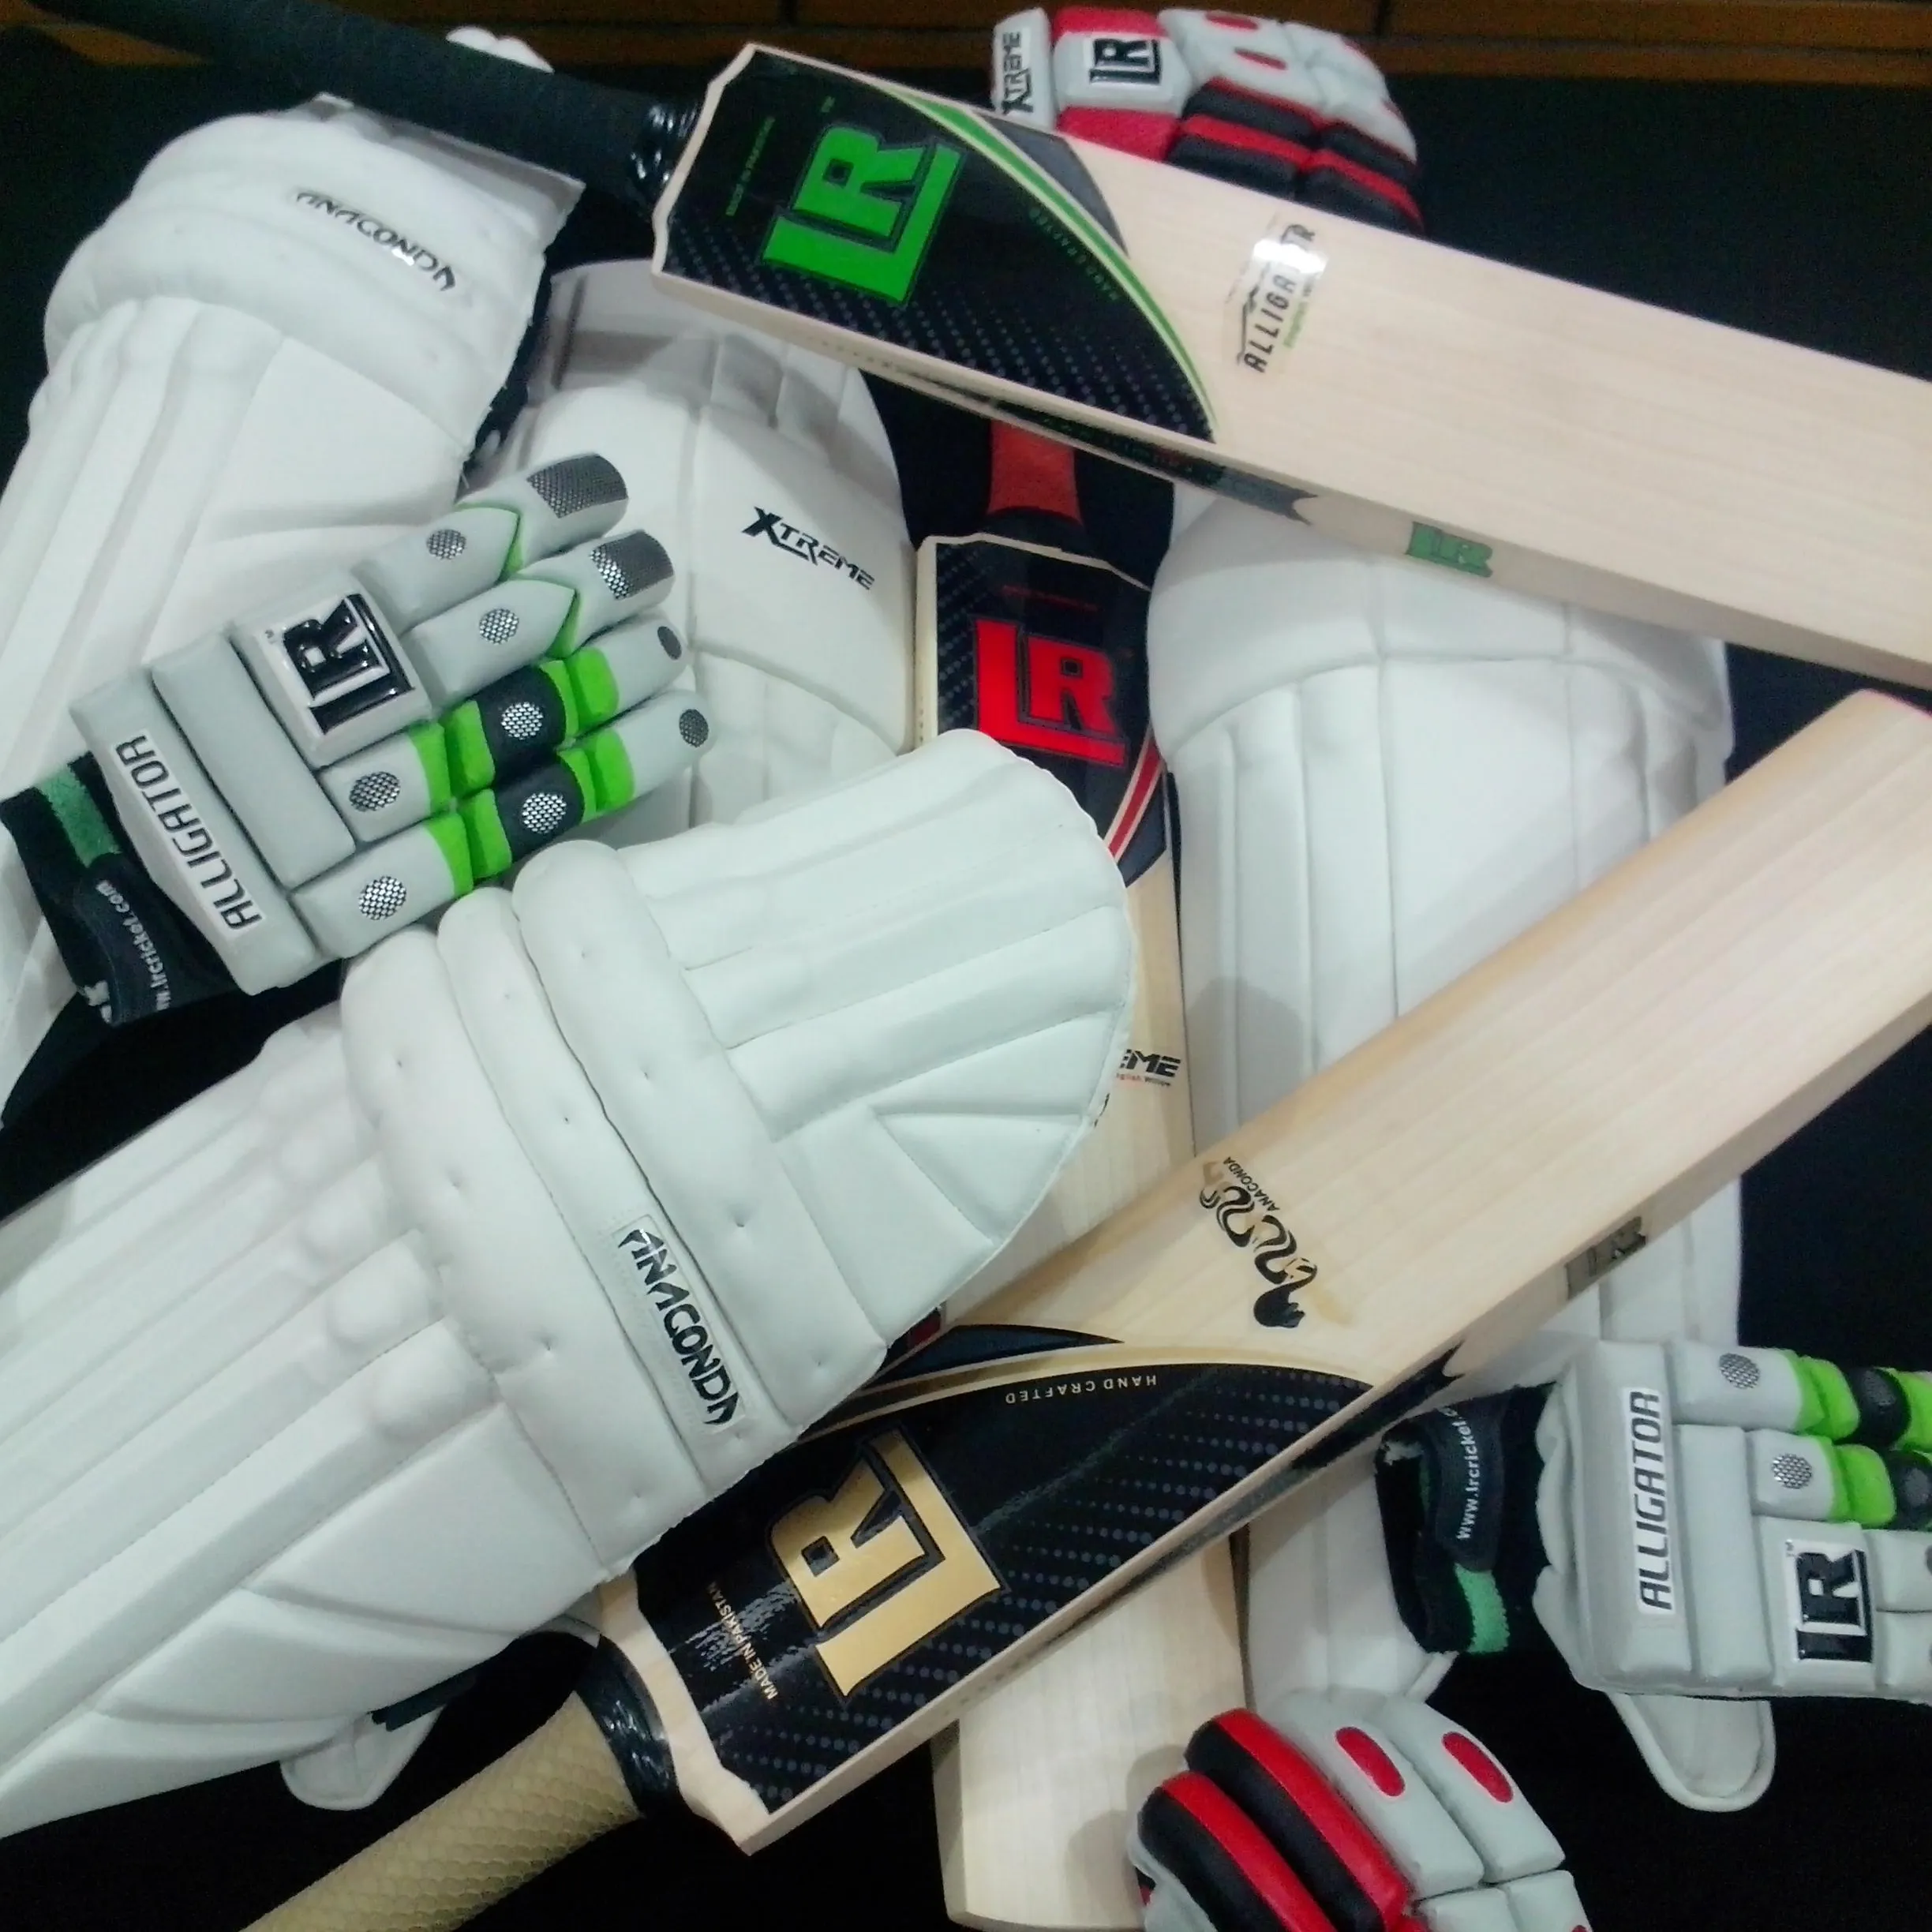 Oyuncular Edition kriket sopası vuruş pedleri beyzbol eldiveni kriket topları ve diğer tüm kriket ürünleri özel logo ile